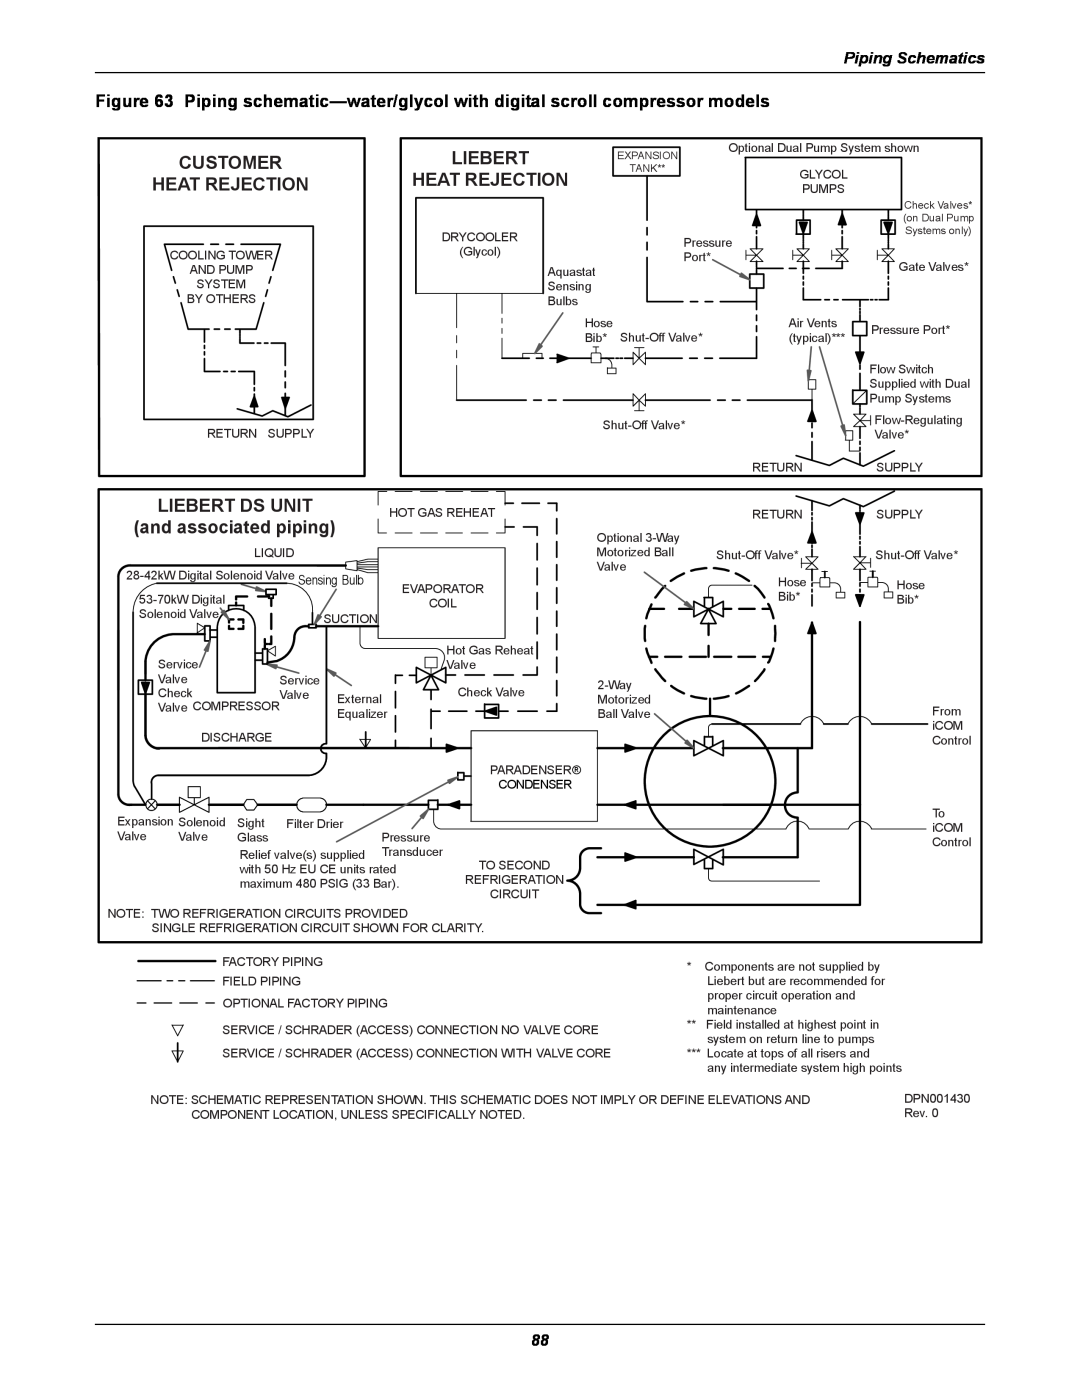 Liebert DS user manual Customer Heat Rejection, Liebert Ds Unit, and associated piping, Piping Schematics 